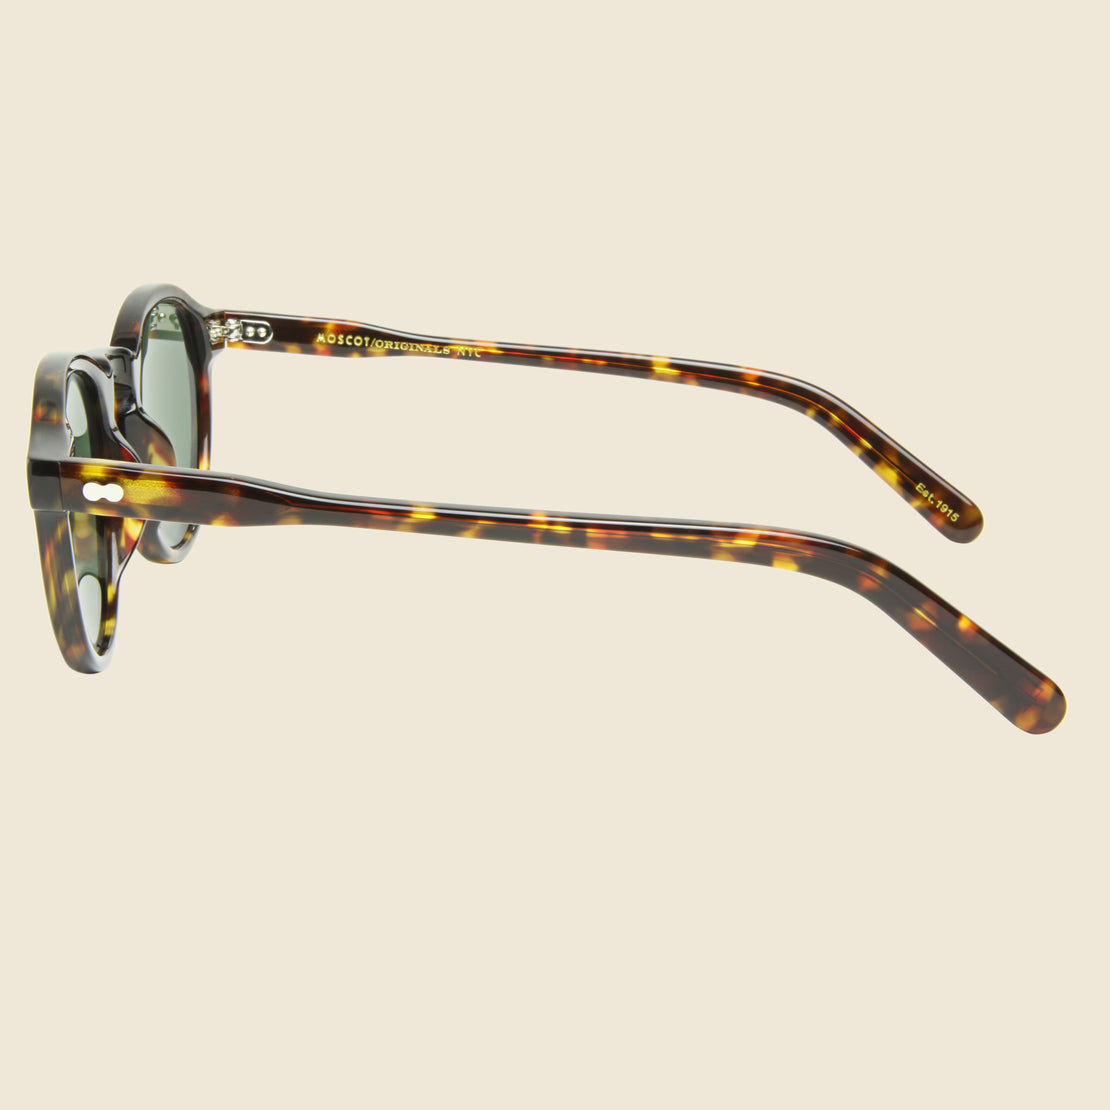 Miltzen 46mm - Tortoise/G15 - Moscot - STAG Provisions - Accessories - Eyewear